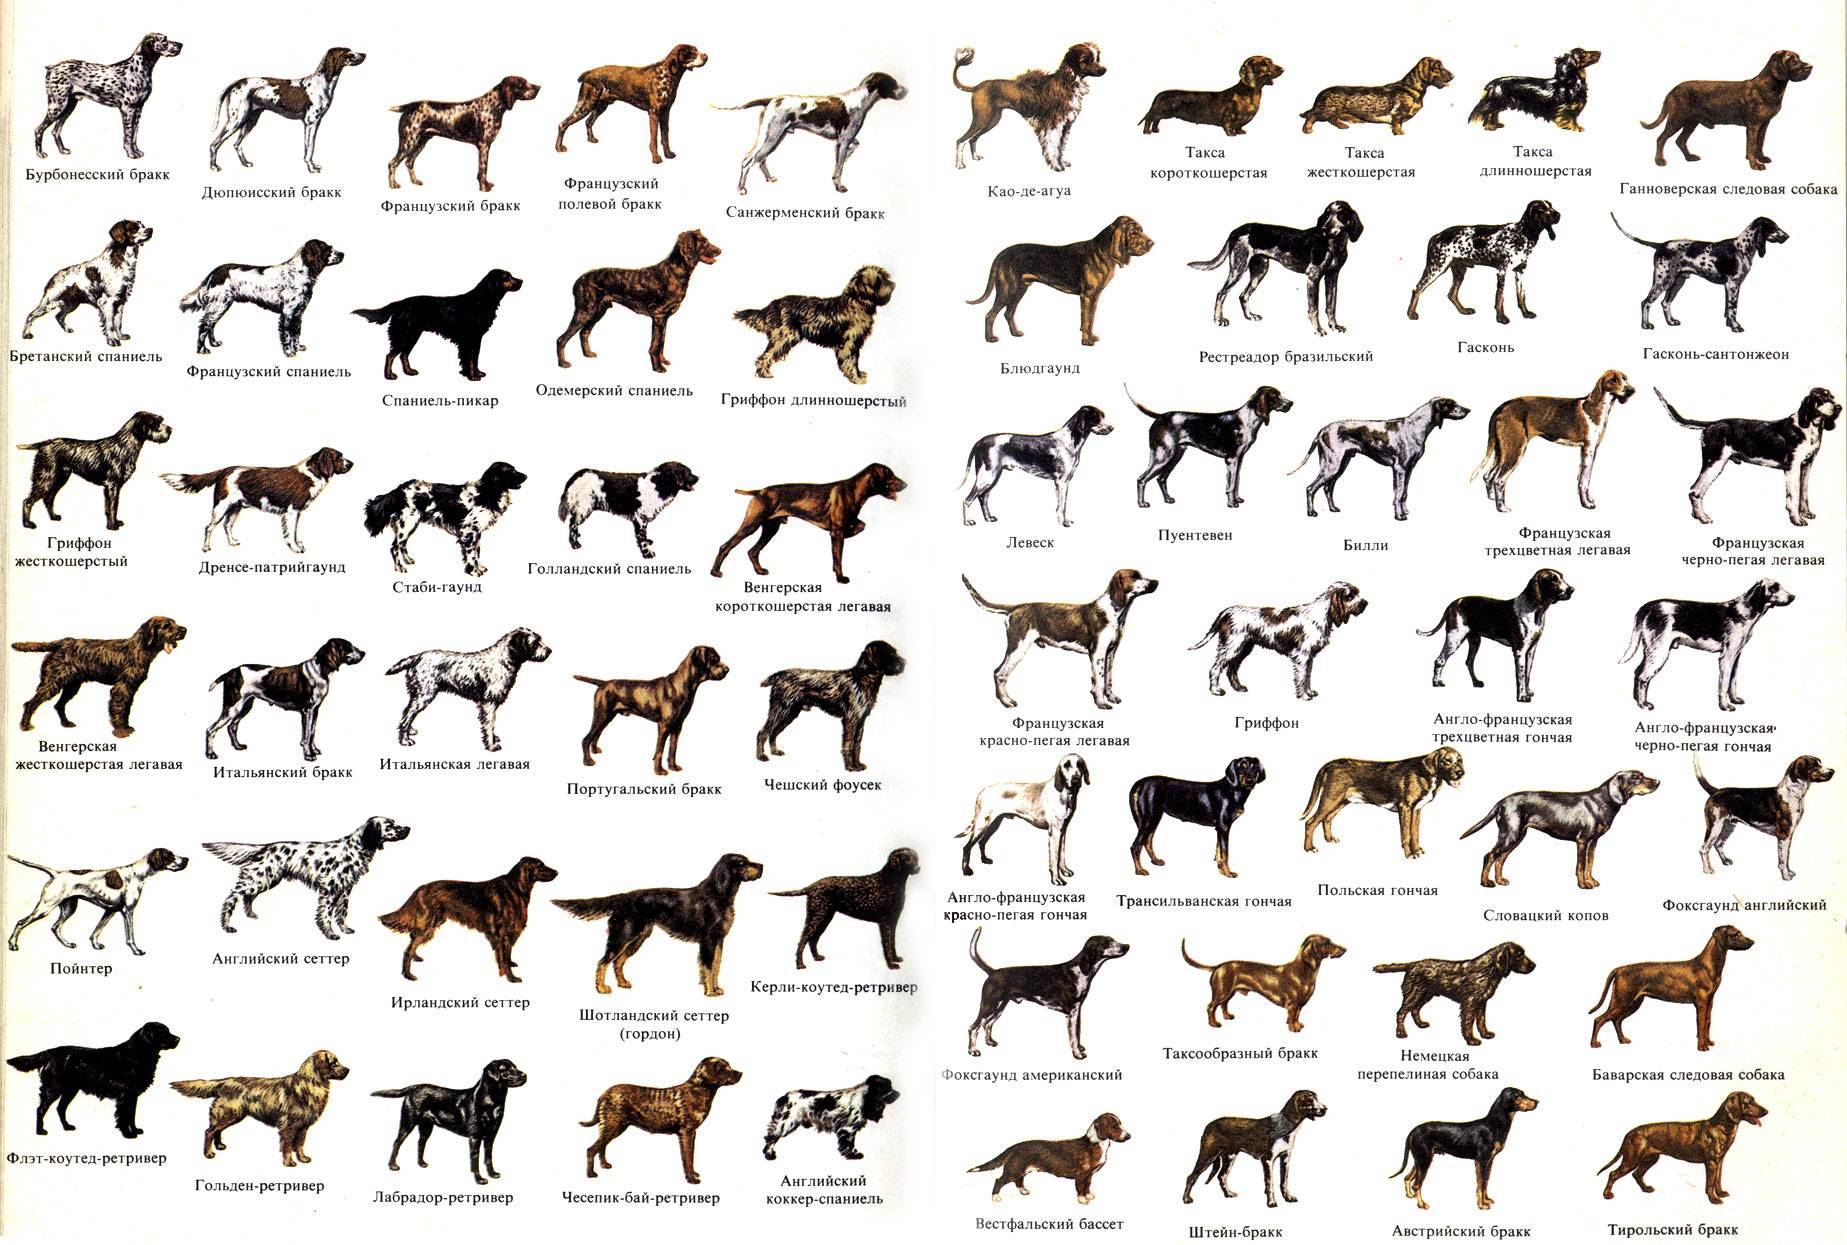 Описание и характеристика немецких овчарок: история породы, особенности характера, принятый стандарт и фото собак